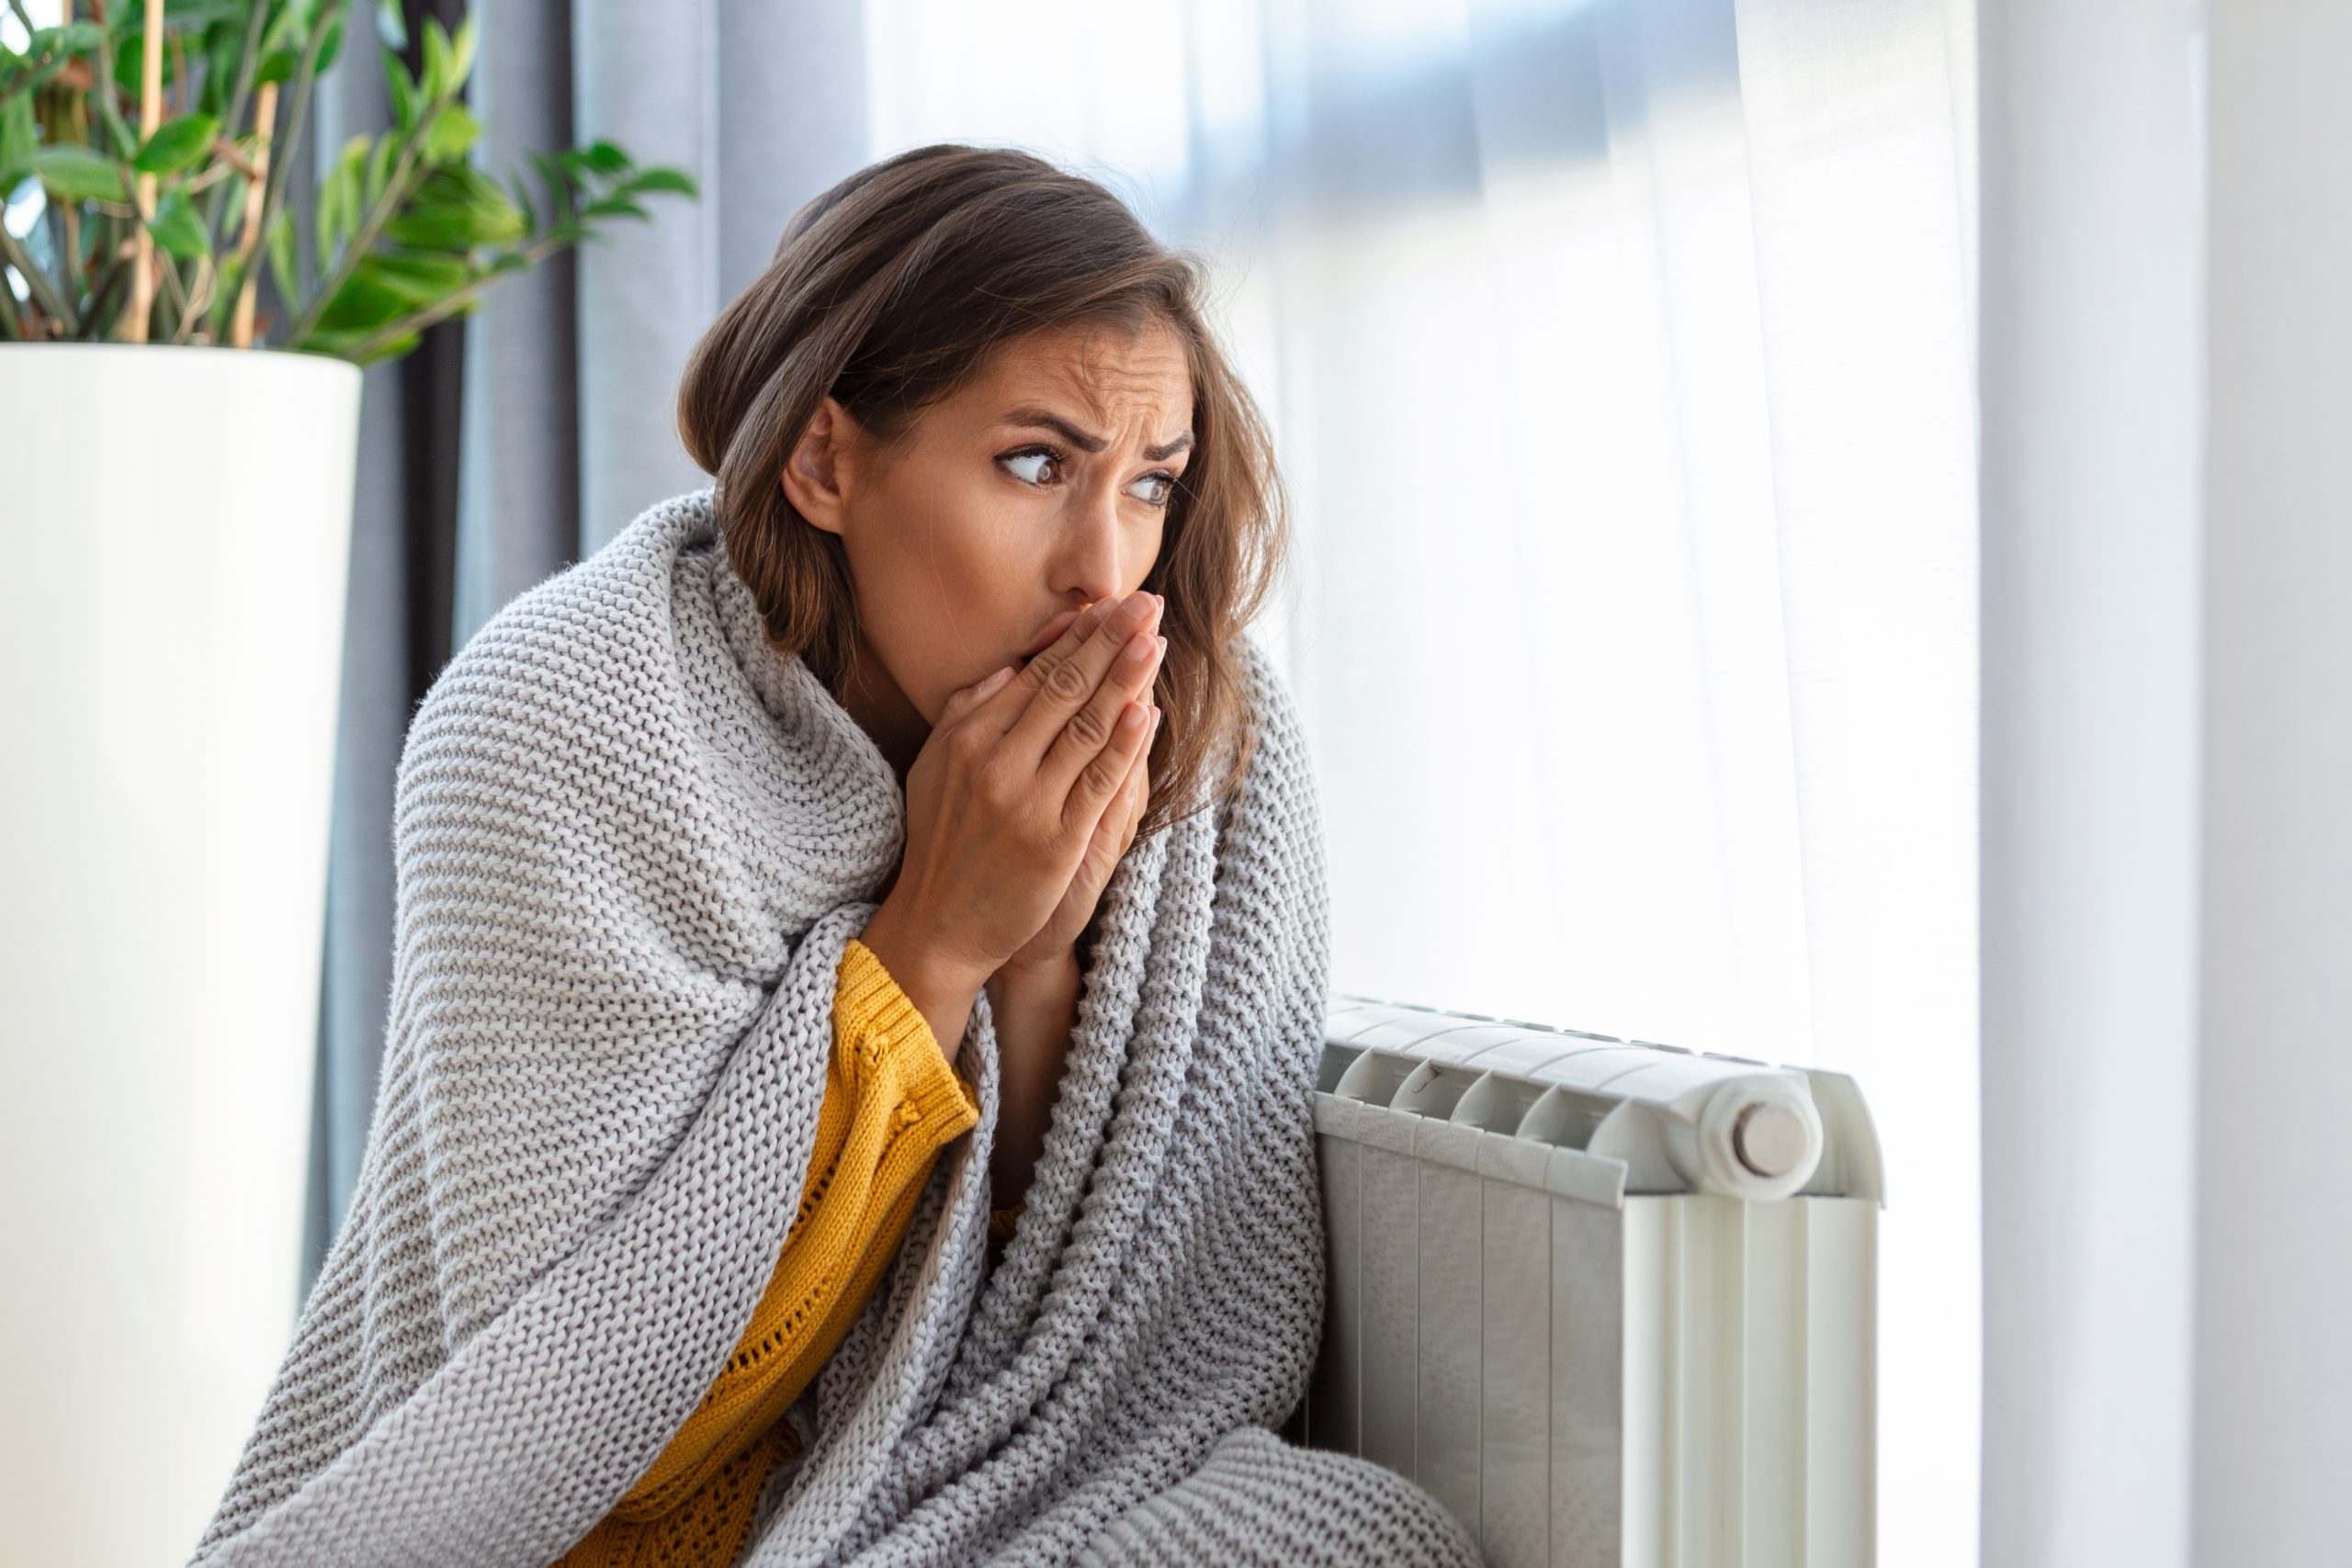 ¿El “enfriarse” es malo para la salud?  A ver si esta madre alarma es un mito o es real